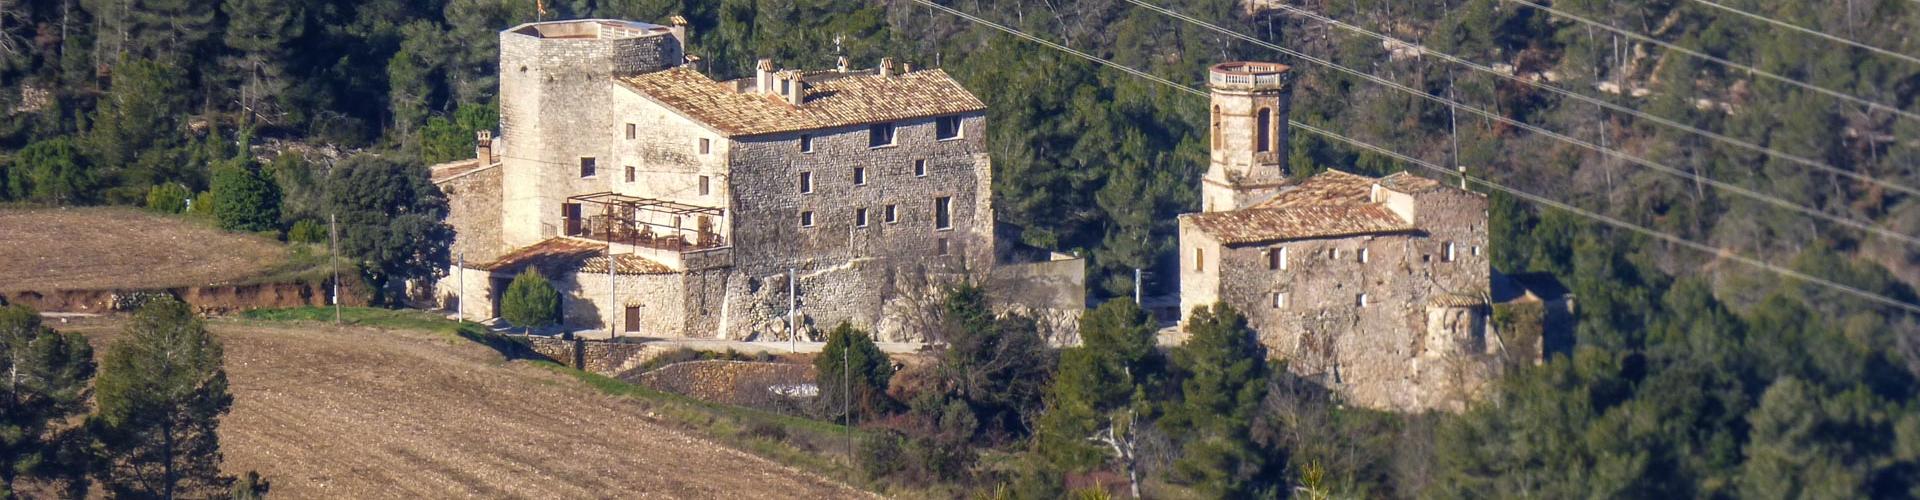 Castell i església de Sant Miquel d'Orpí